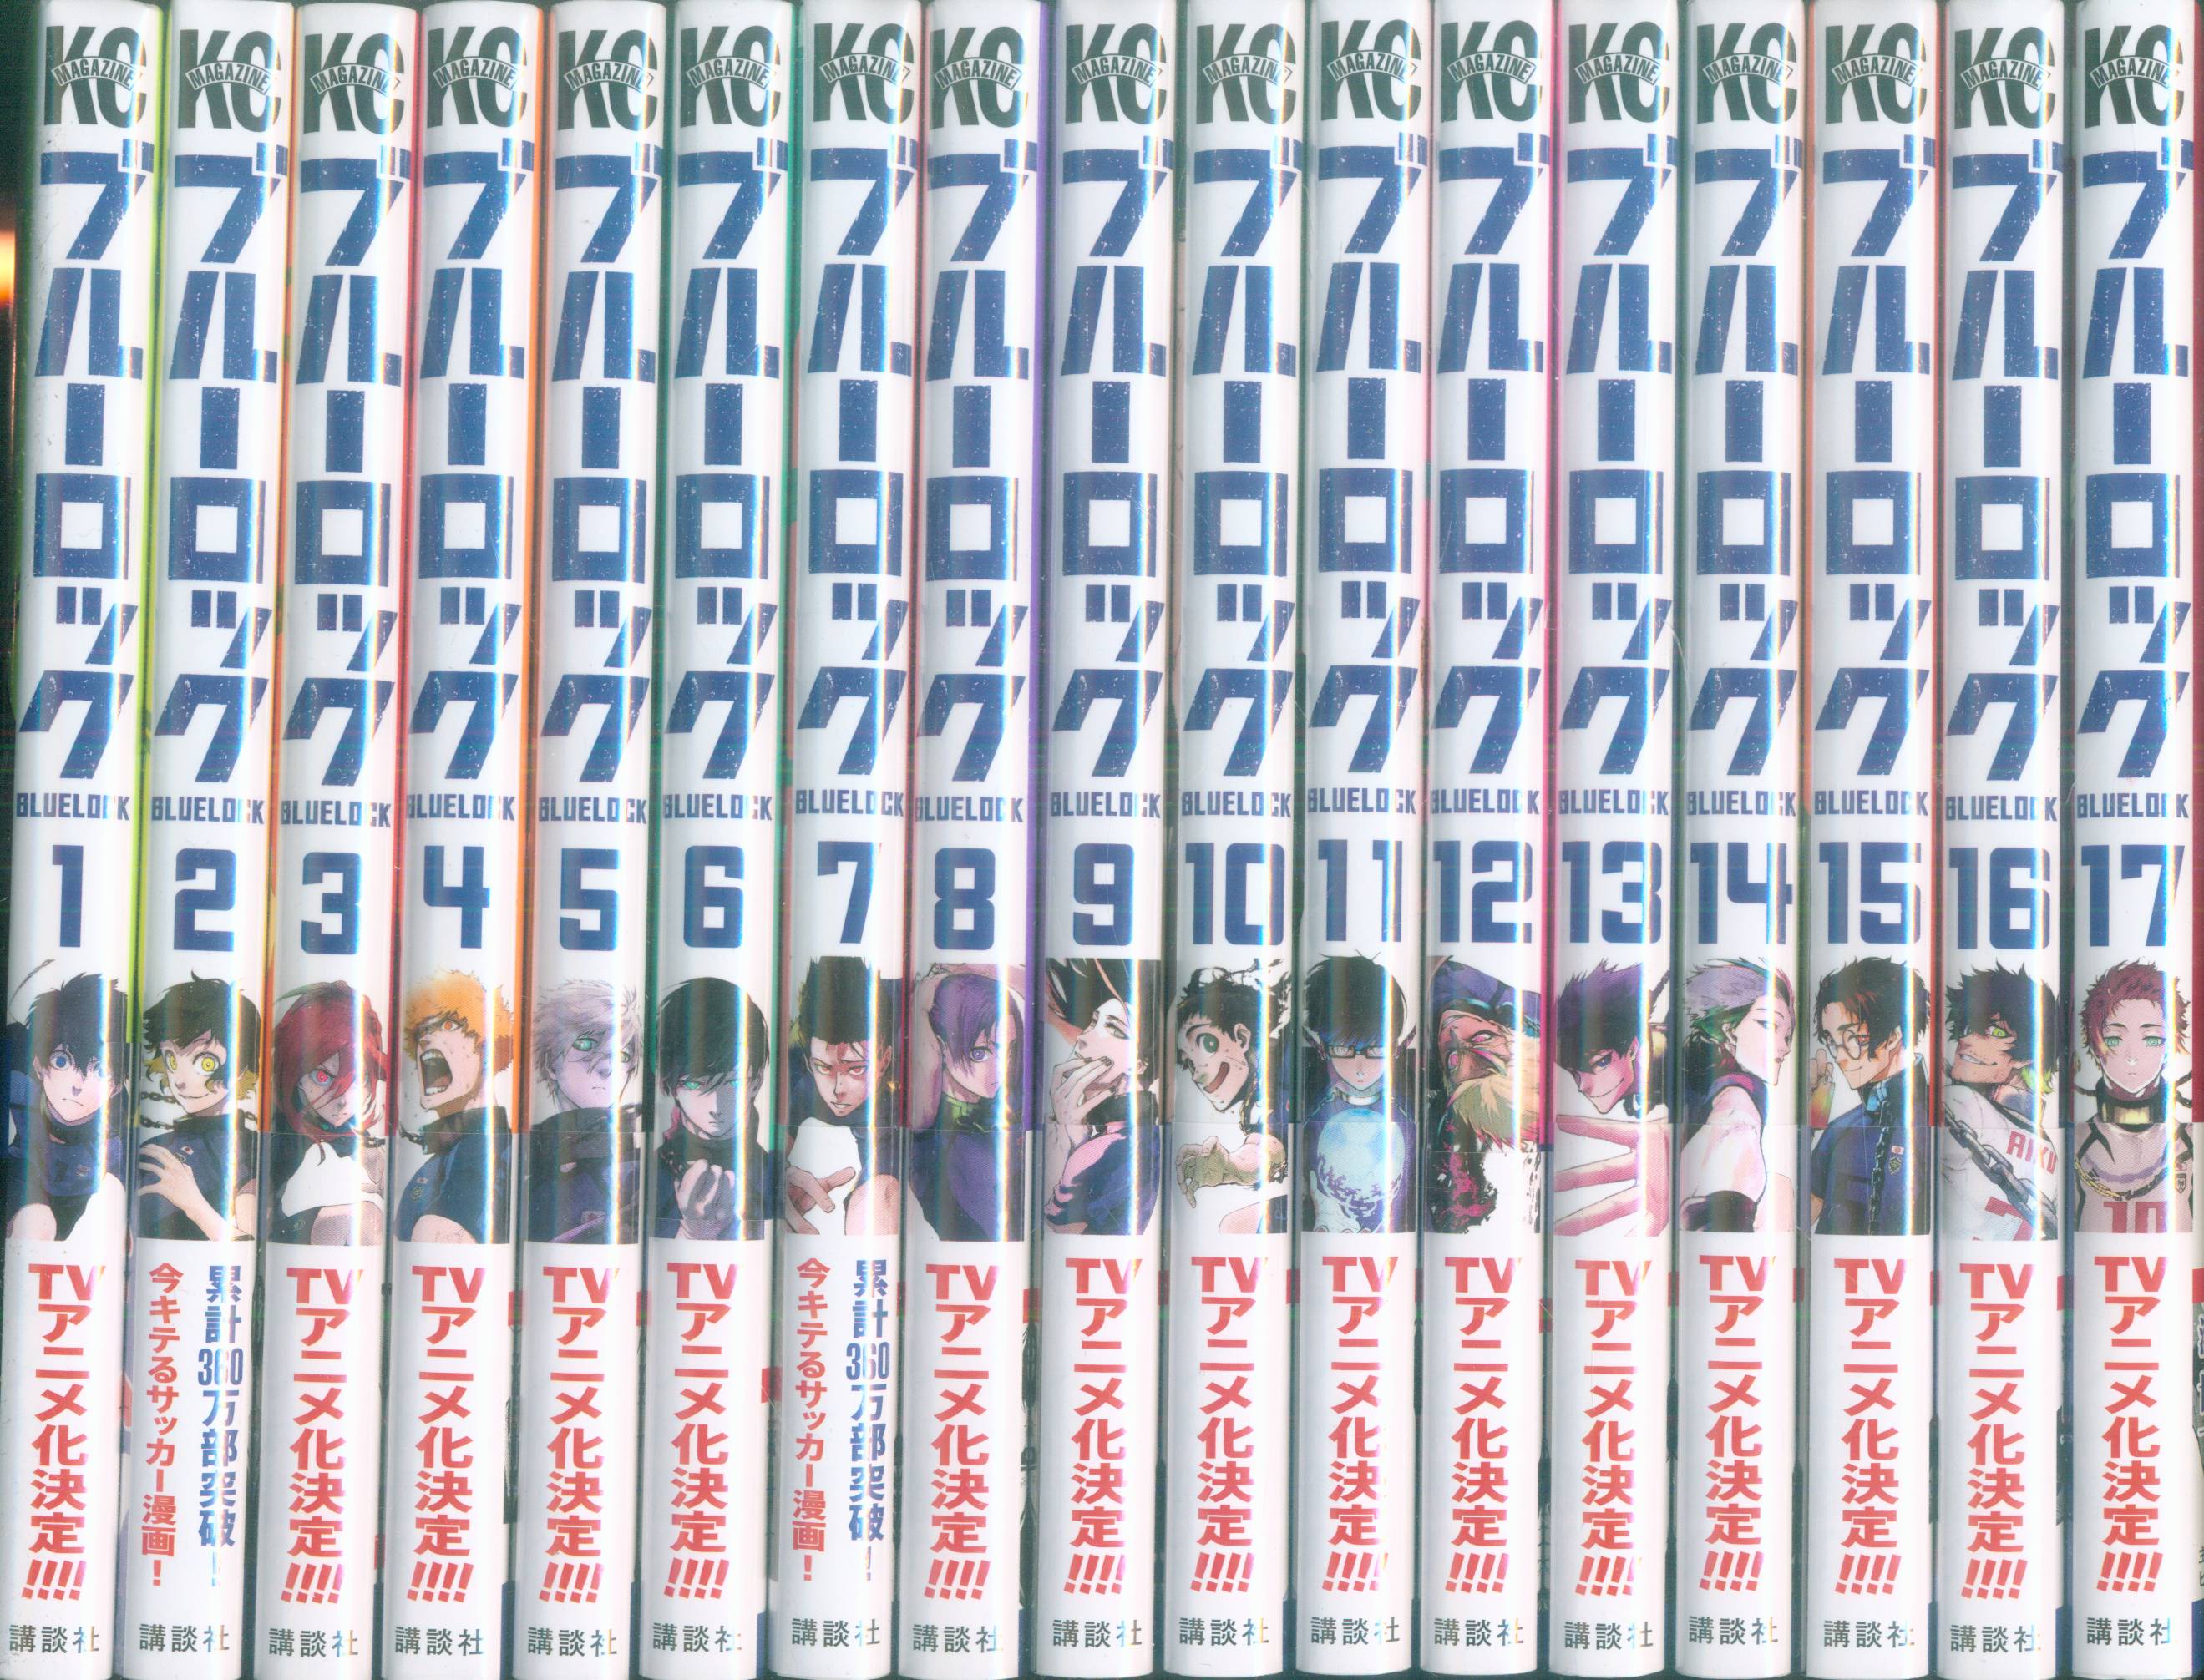 Blue Lock Vol 12 Yusuke Nomura Manga Set English Version Comics